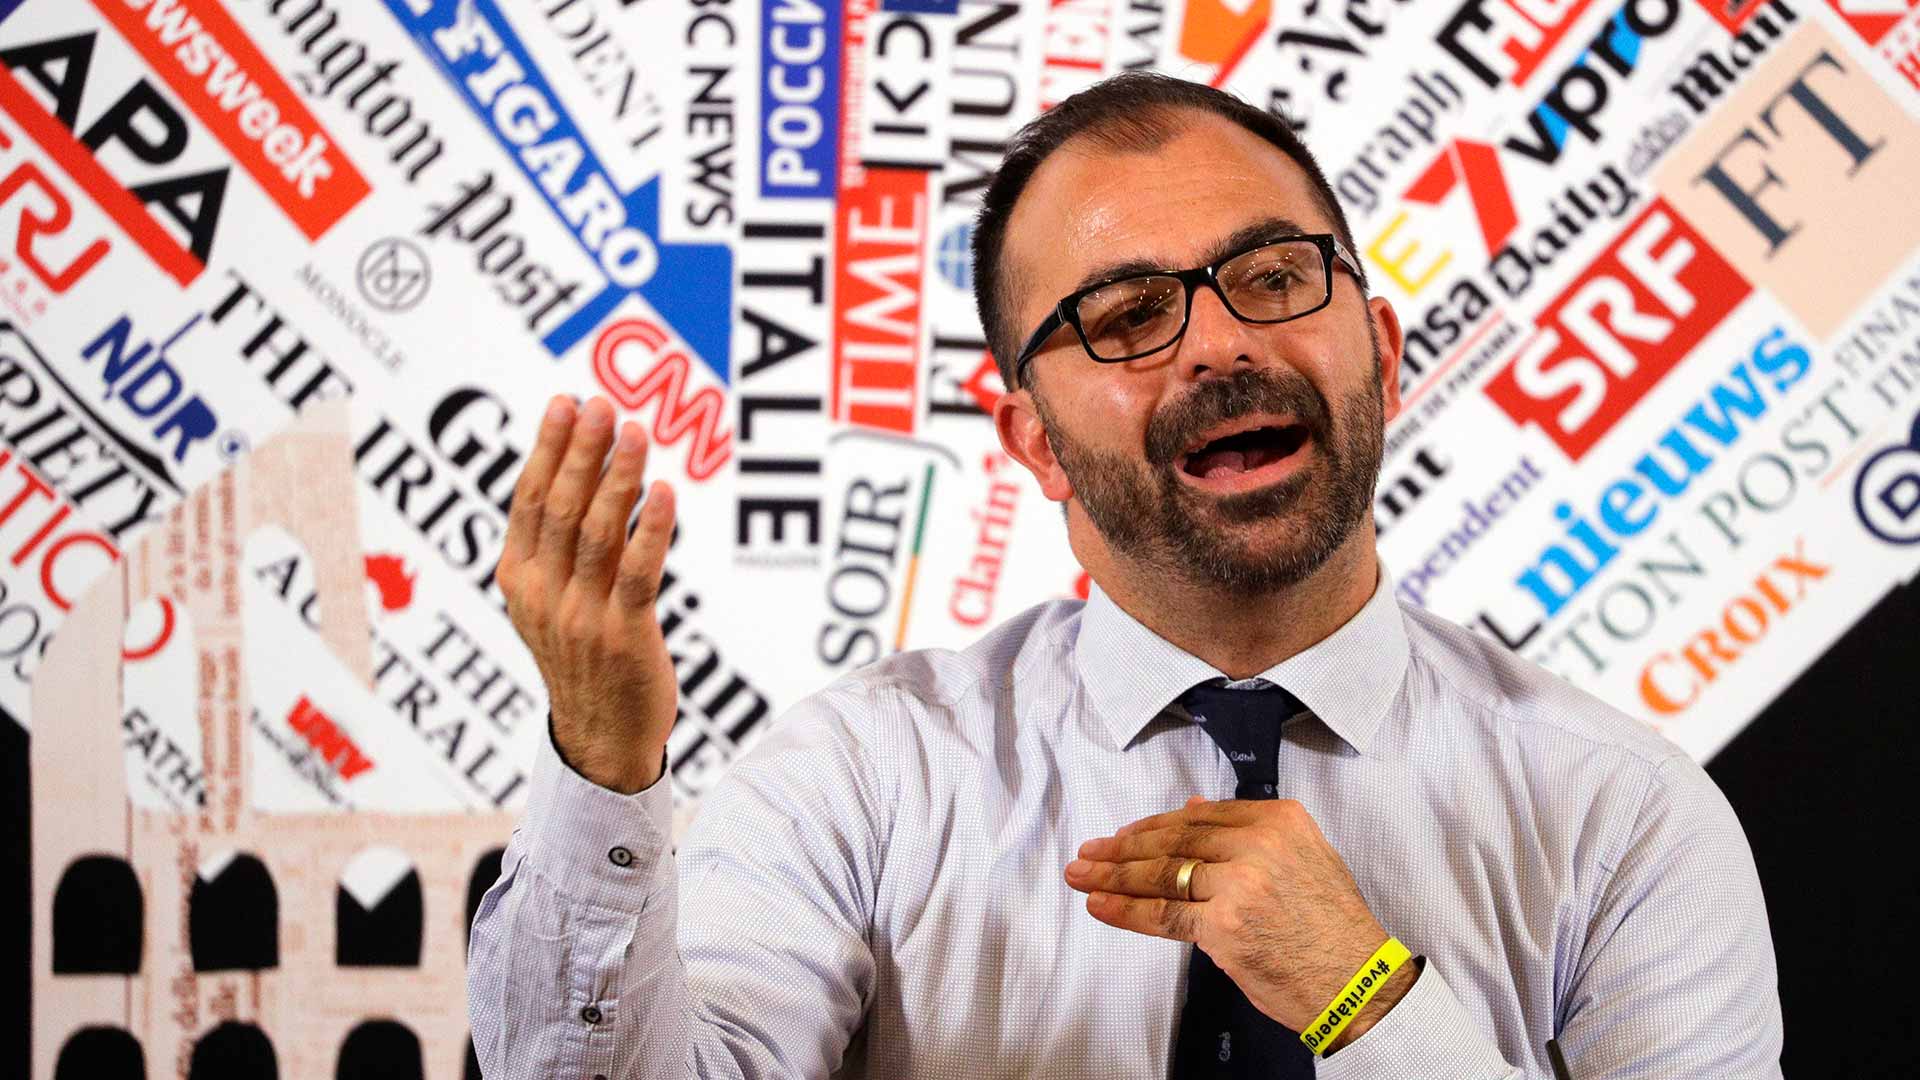 Dimite el ministro de Educación de Italia por su desacuerdo con los Presupuestos